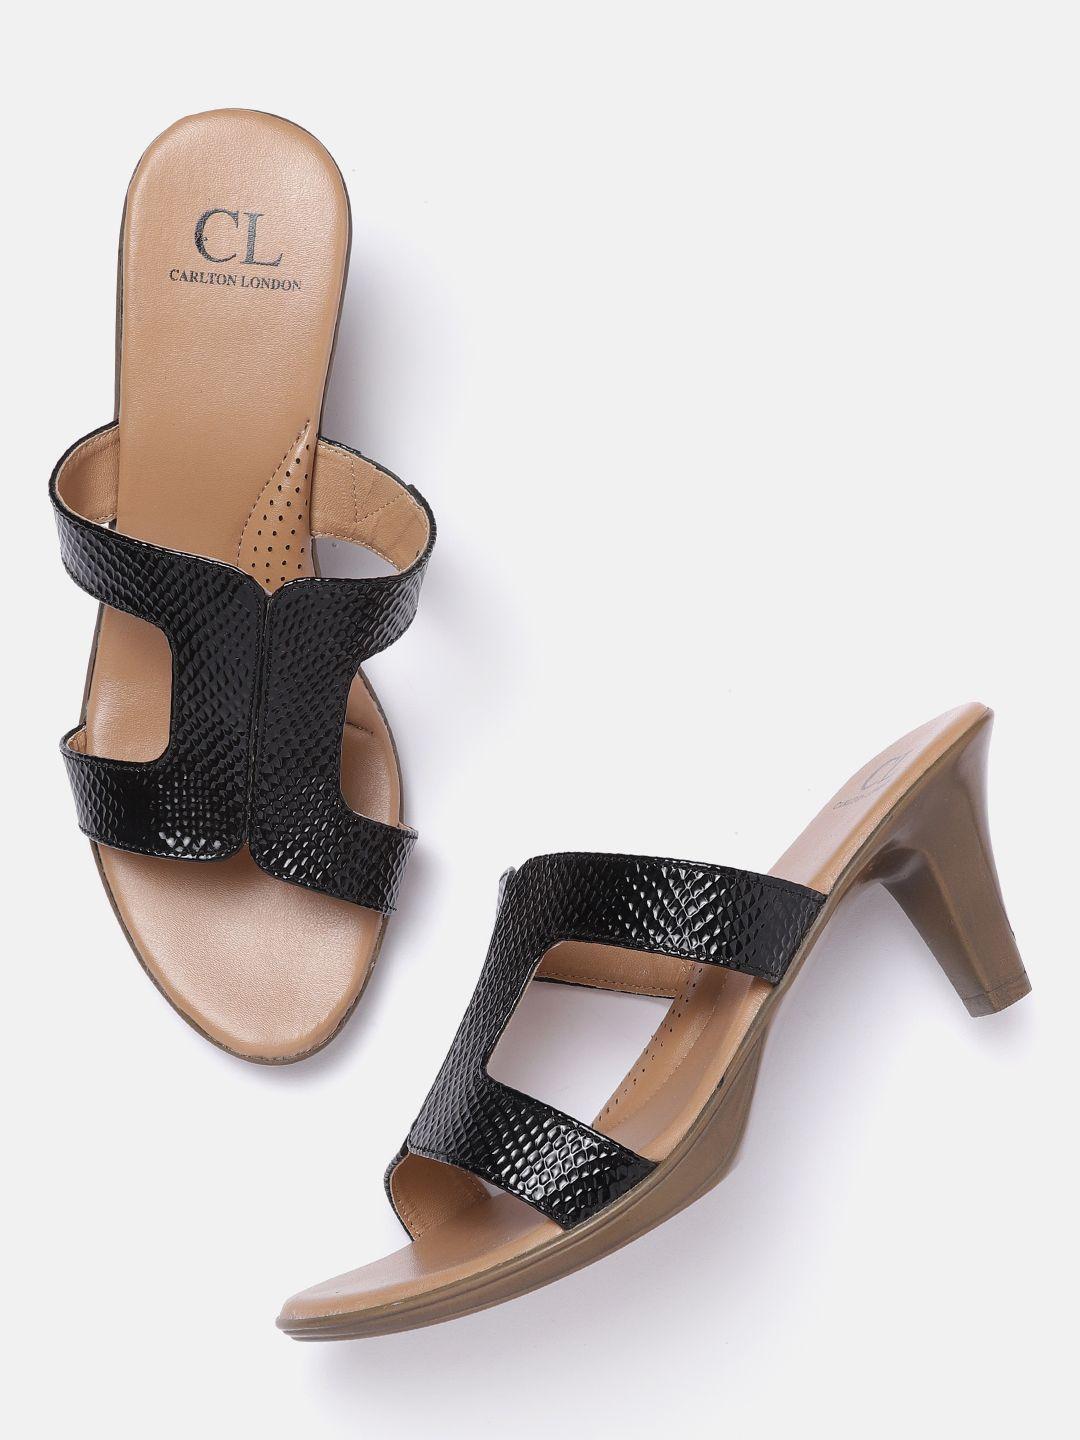 carlton london women black snake skin textured heels